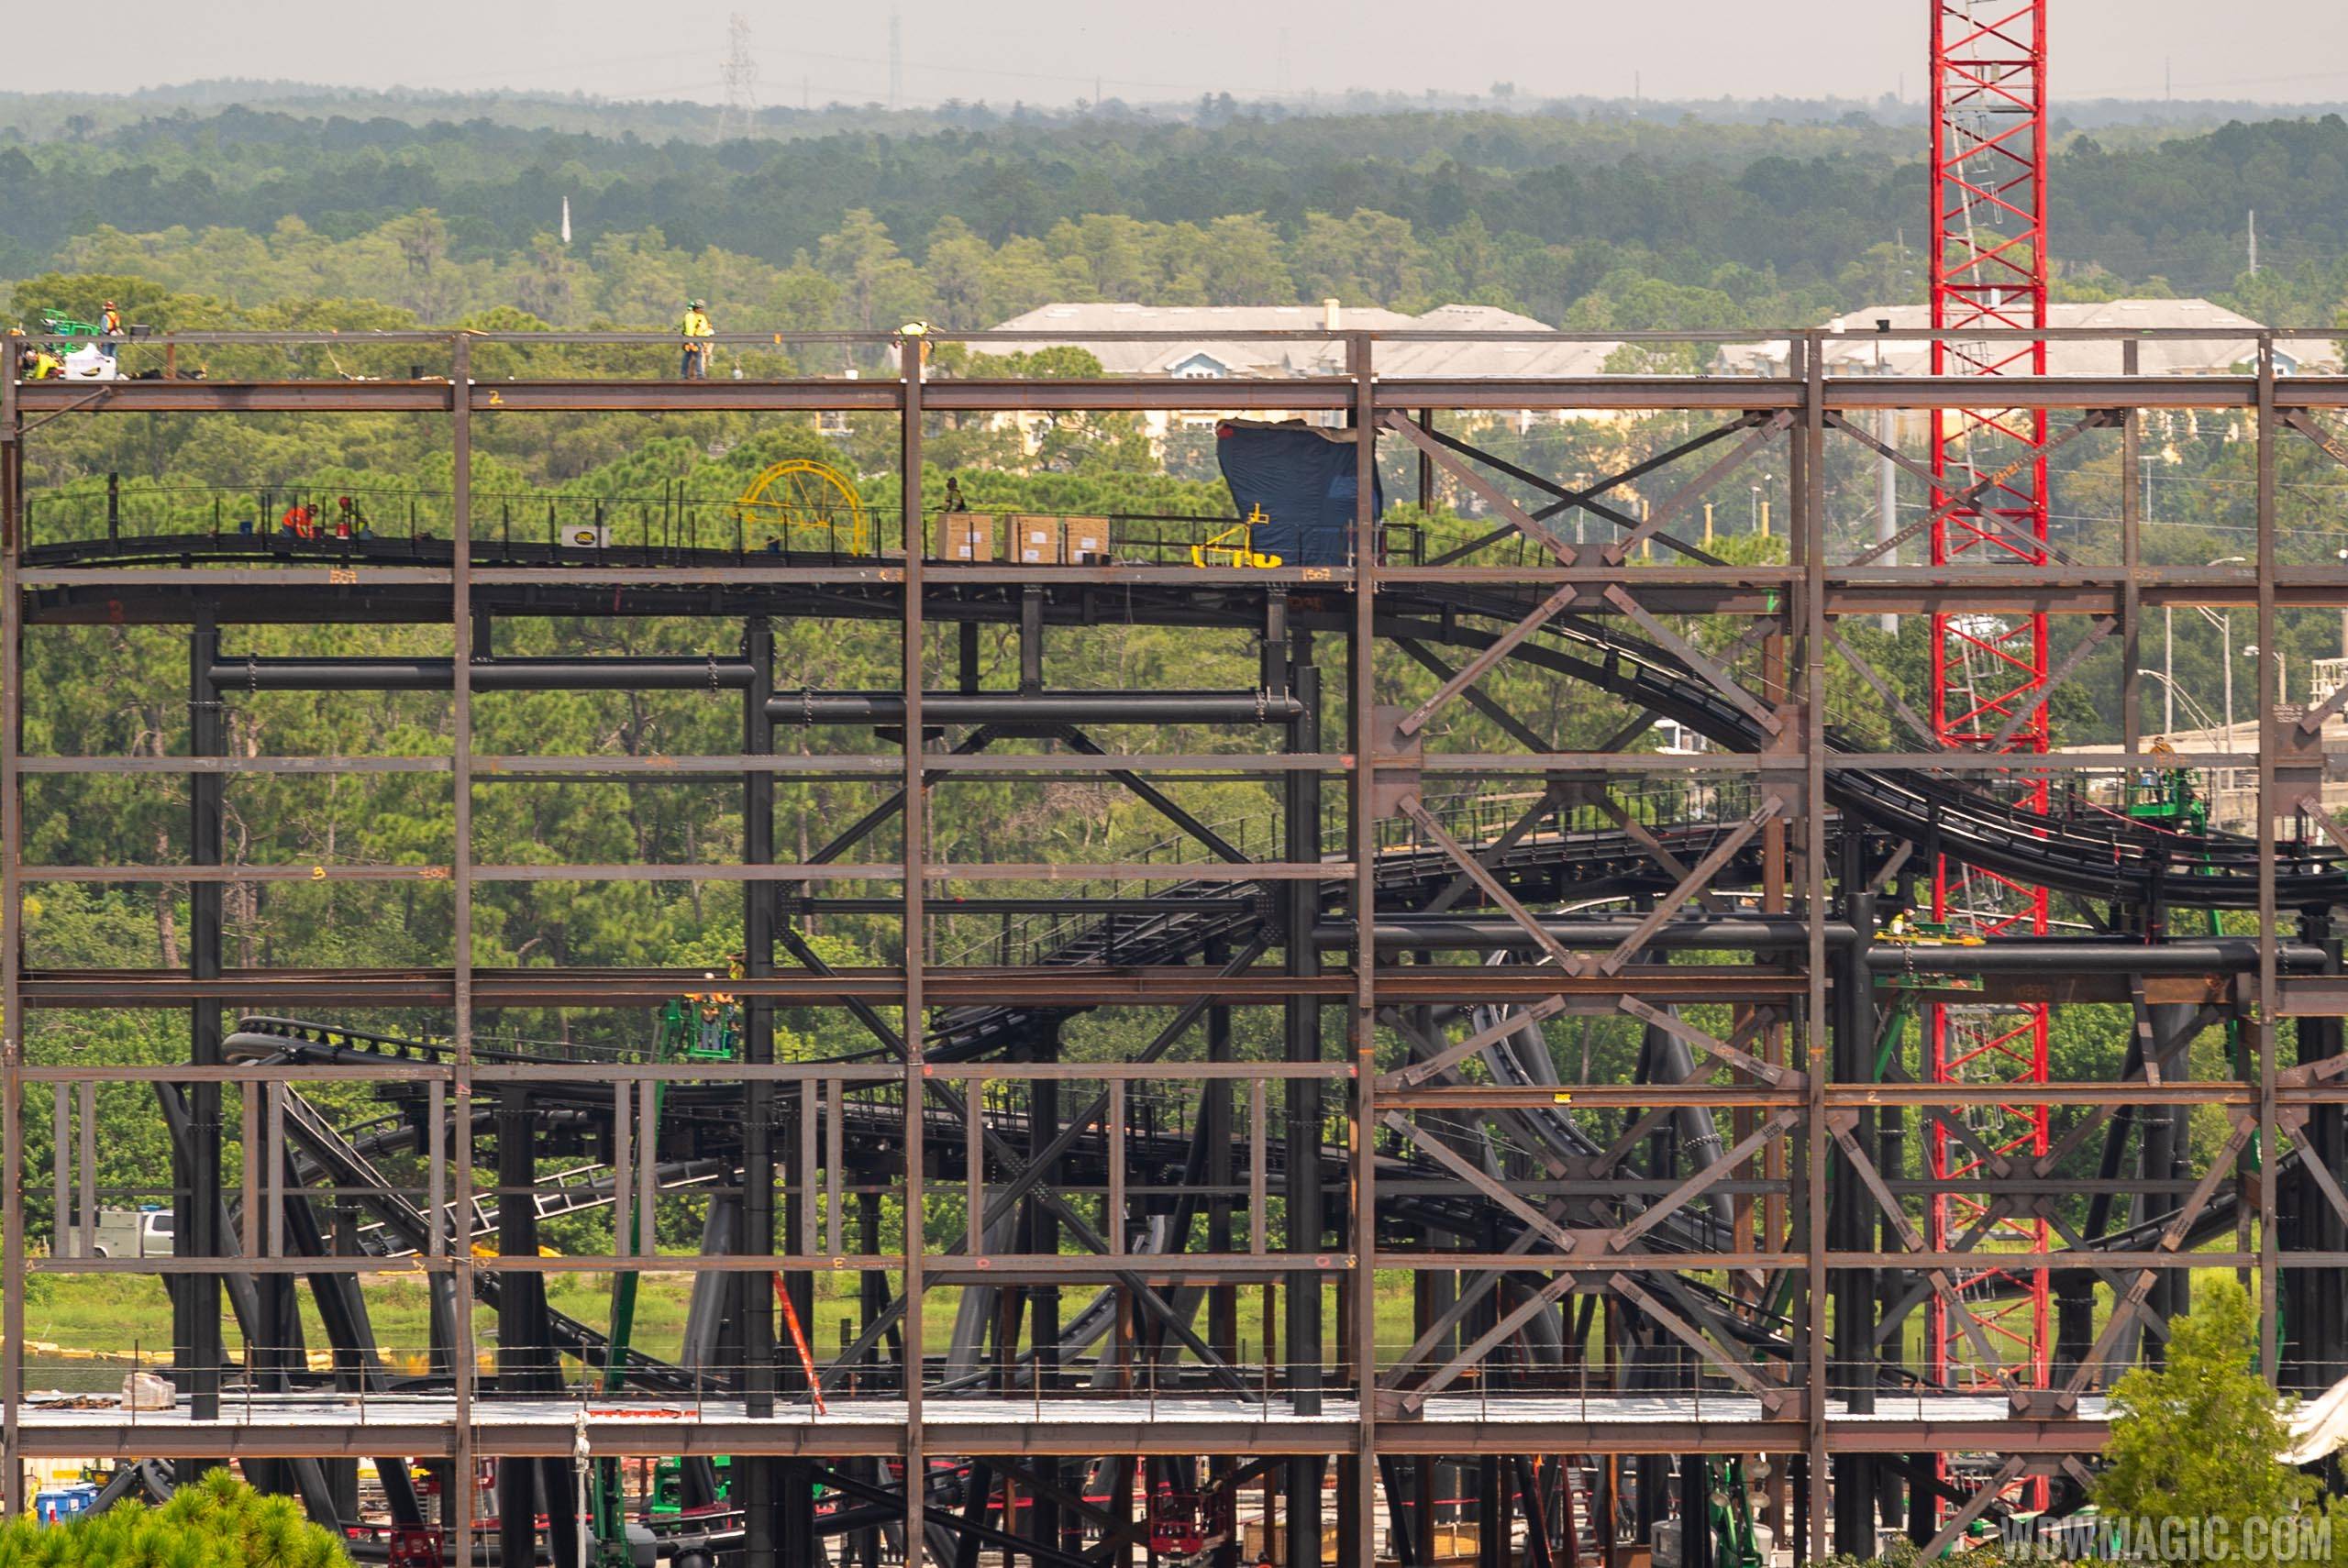 Tron construction site - August 2019